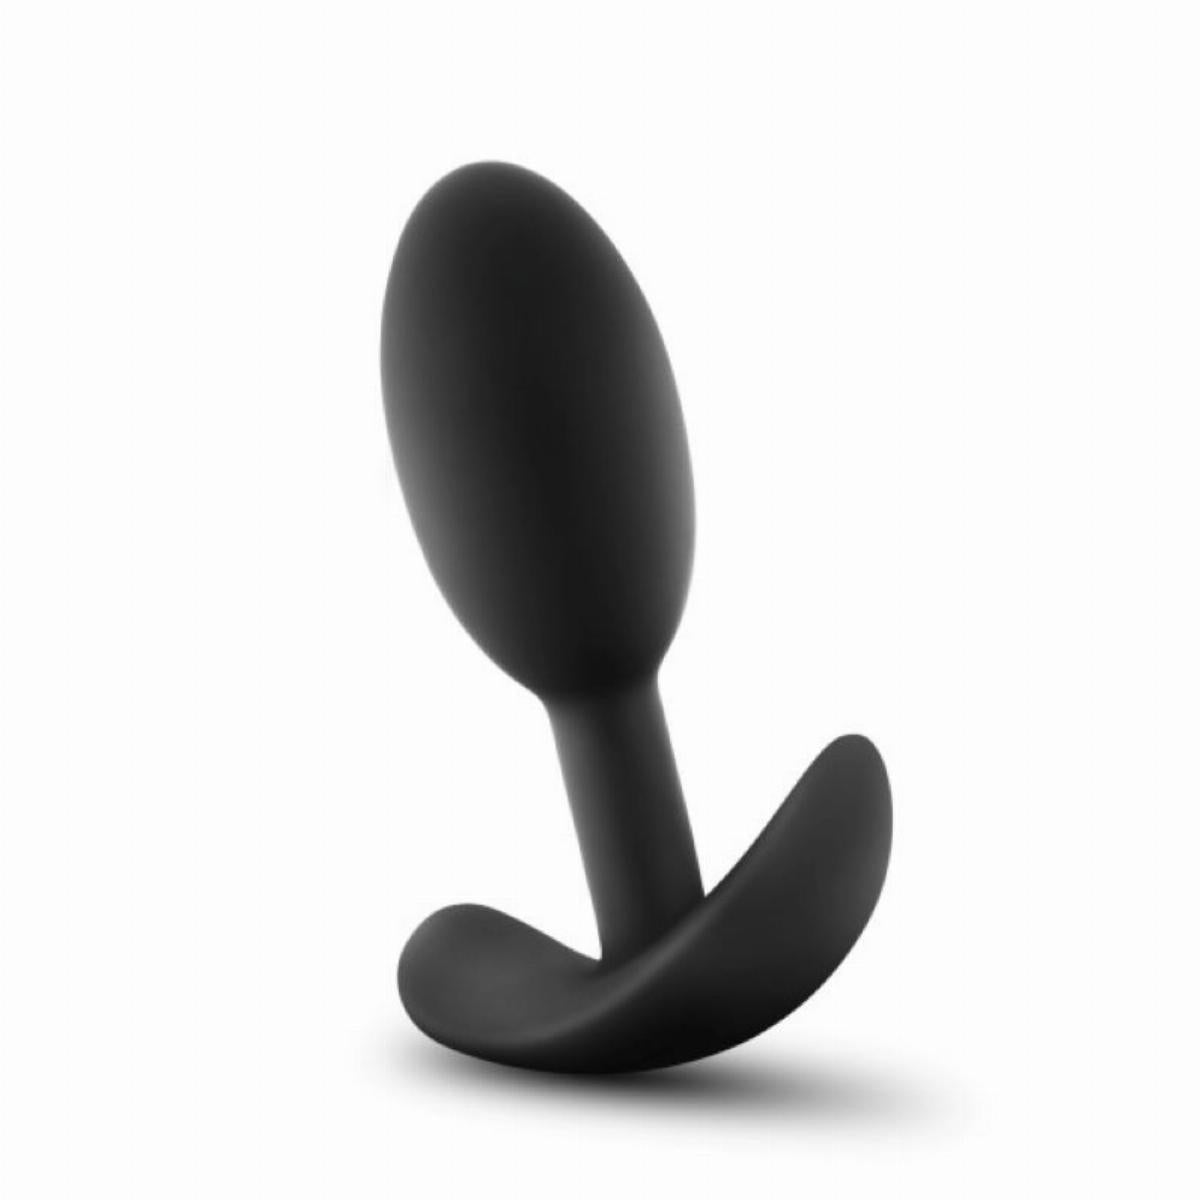 Zwarte butt plug van het merk Anal Advertures. De butt plug heeft een breed handvat en verzwaarde bal binnenin voor extra genot. Te koop bij Flavourez.